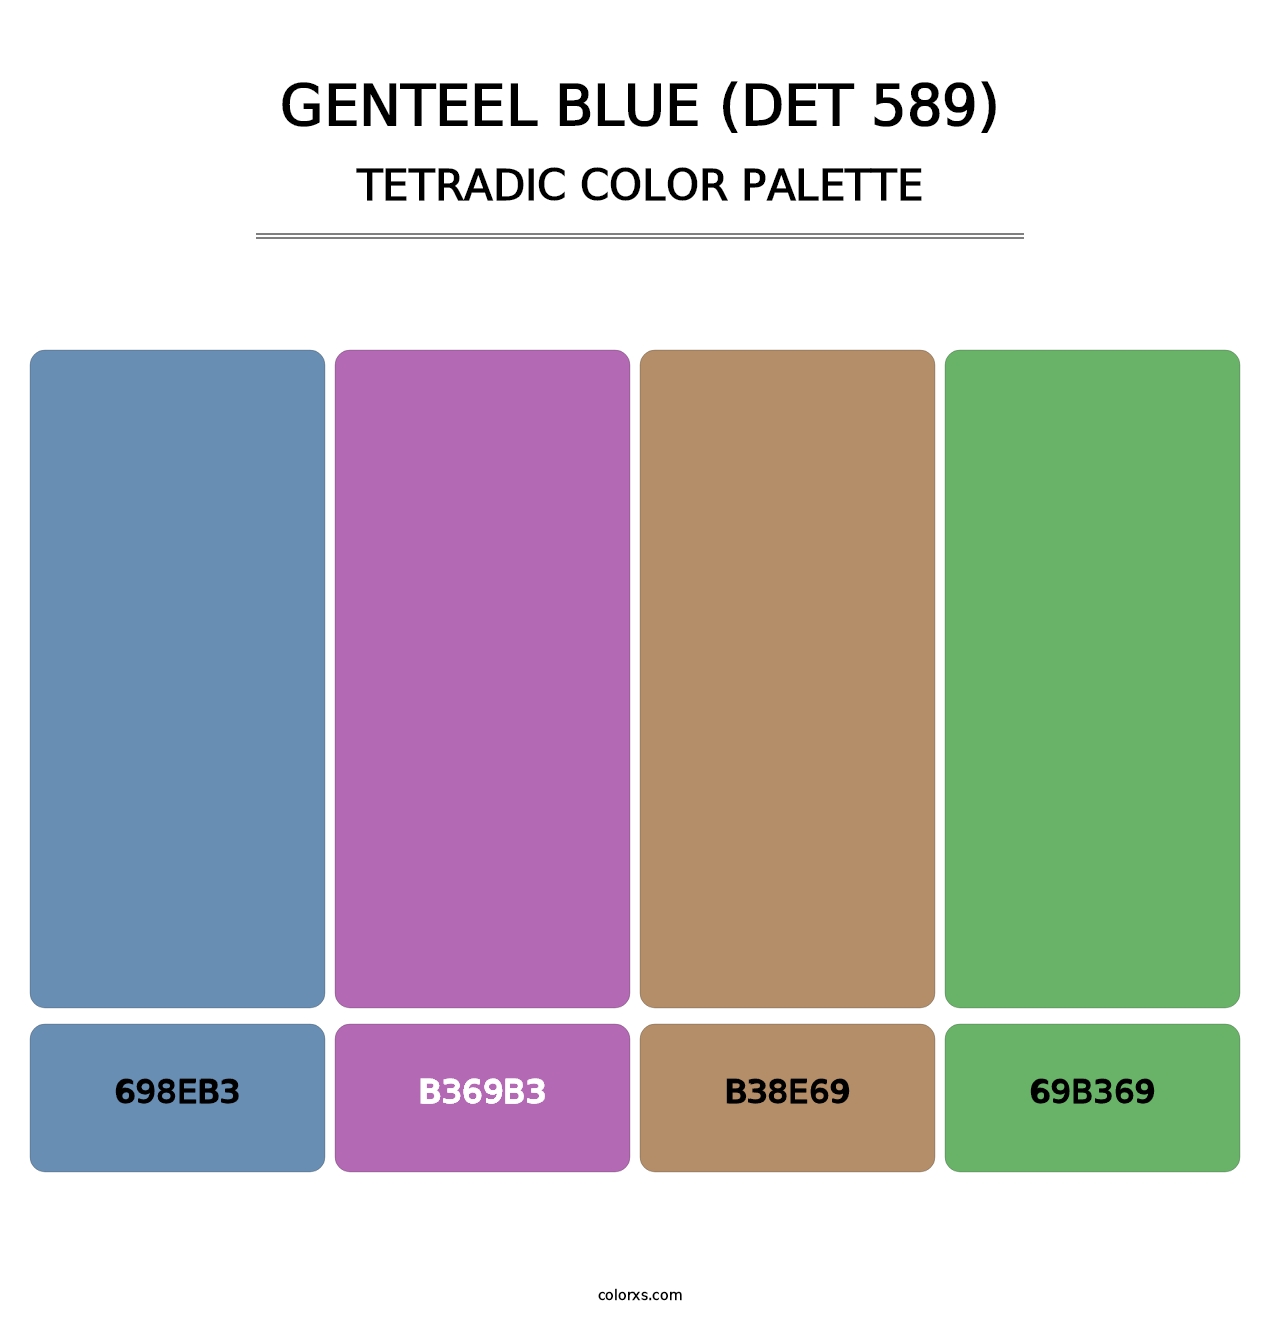 Genteel Blue (DET 589) - Tetradic Color Palette